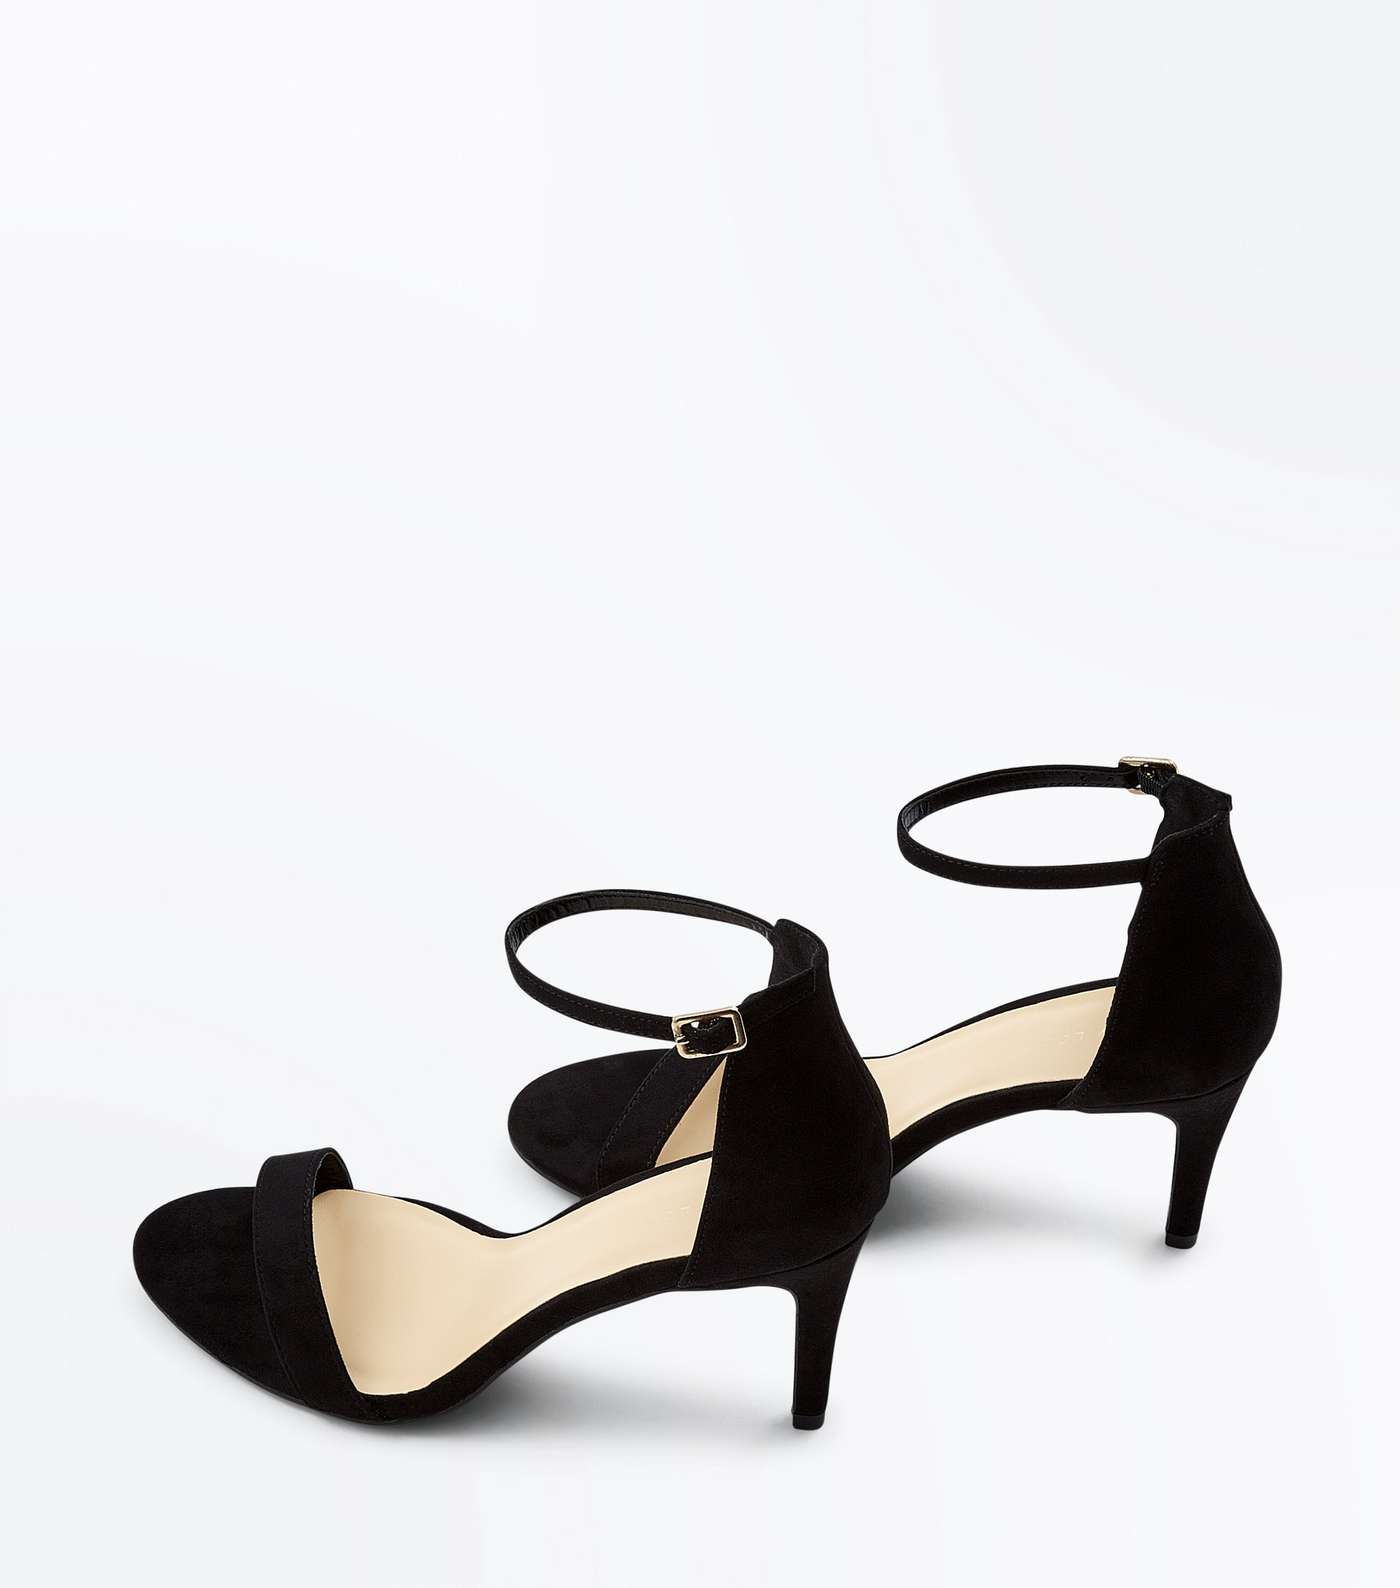 Black Suedette Stiletto Heeled Sandals Image 4